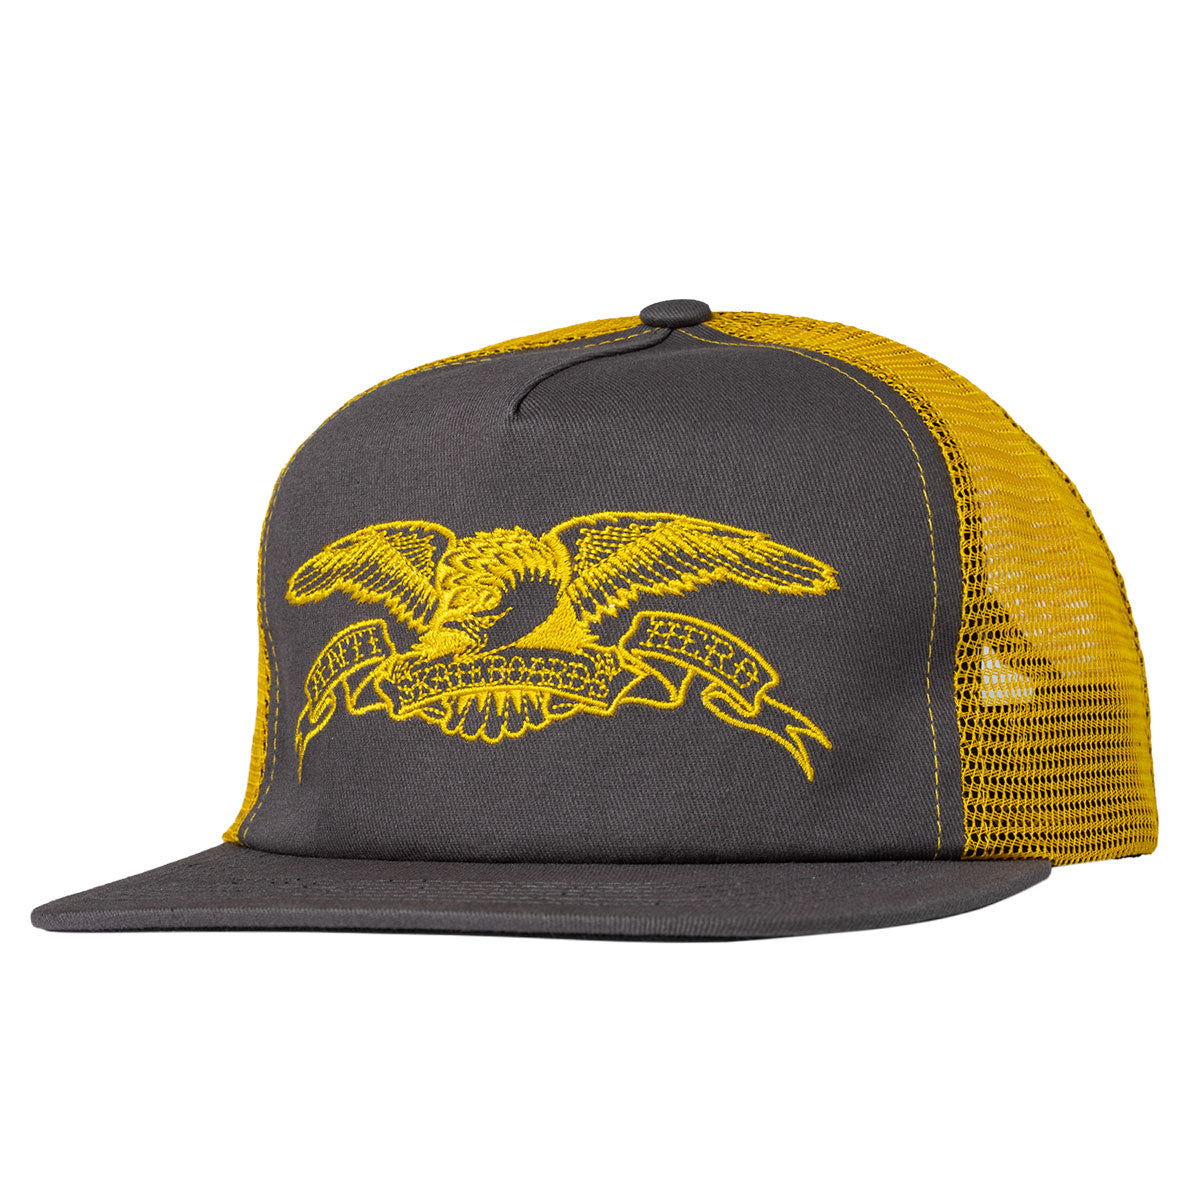 Anti-Hero Basic Eagle Hat - Grey/Gold image 1